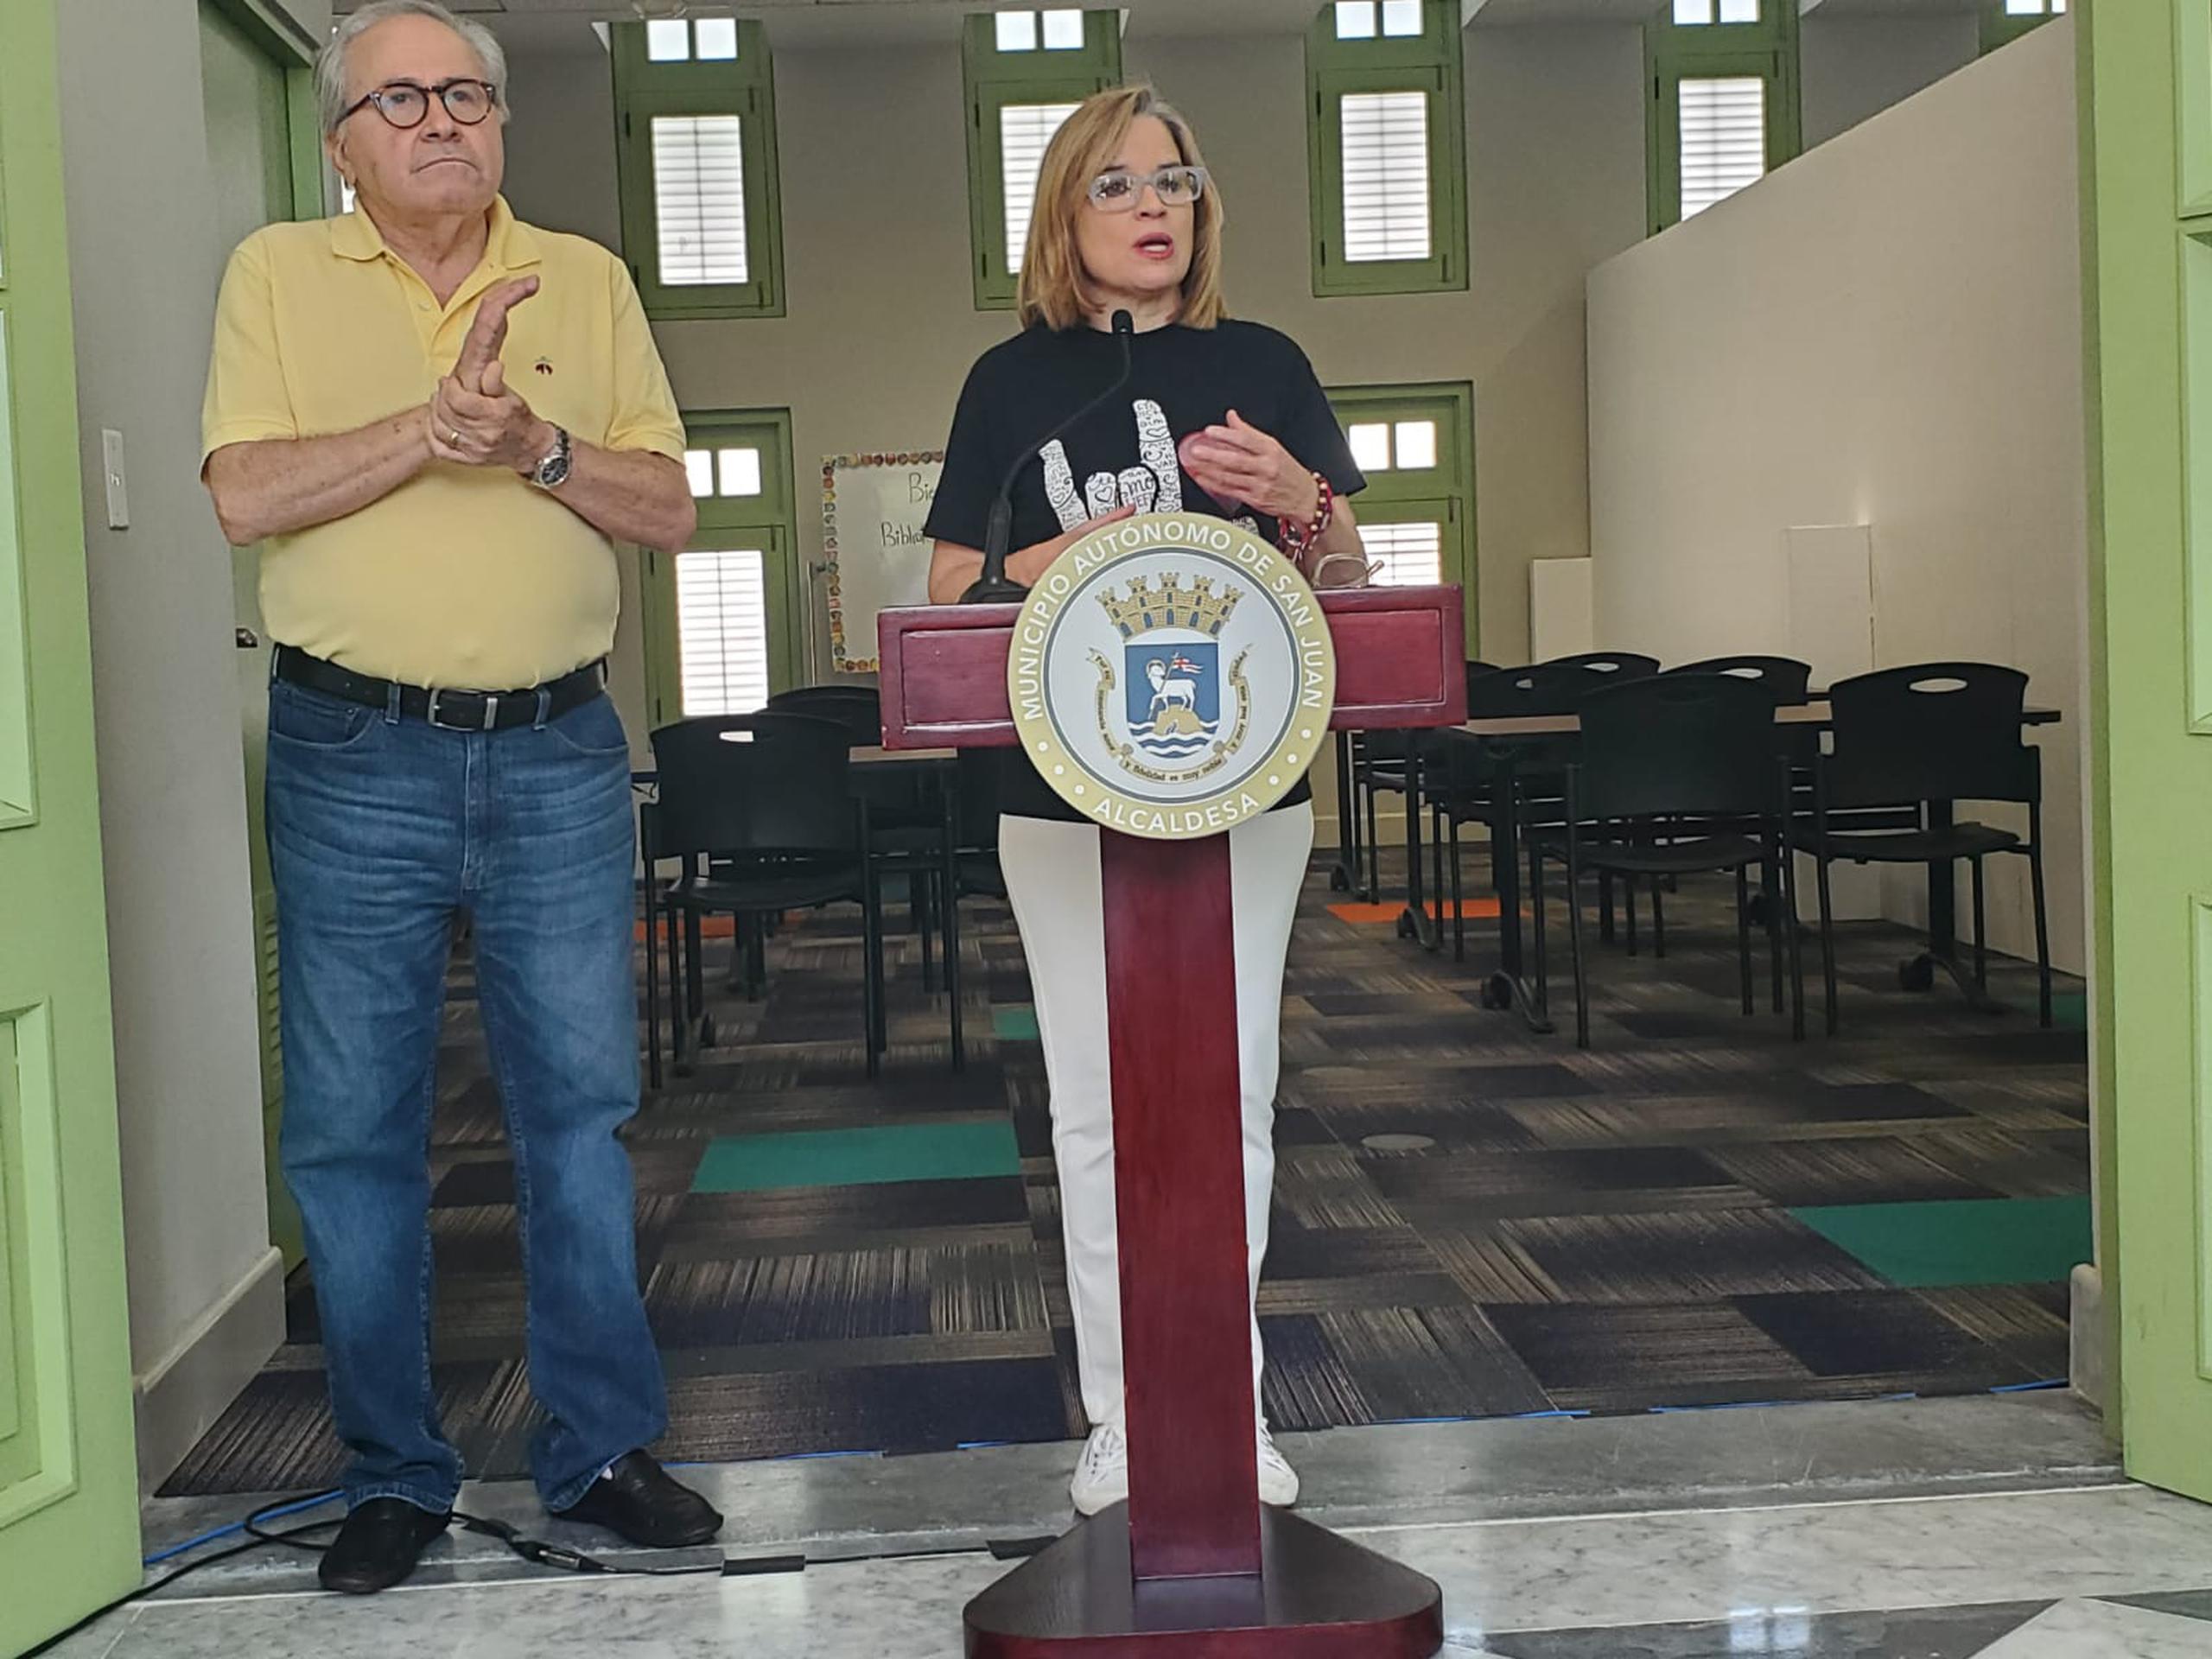 Carmen Yulín hizo las expresiones luego de anunciar que a partir de lunes, los estudiantes de la Escuela José Julián Acosta tomarán clases en la Biblioteca Carnegie en el Viejo San Juan.